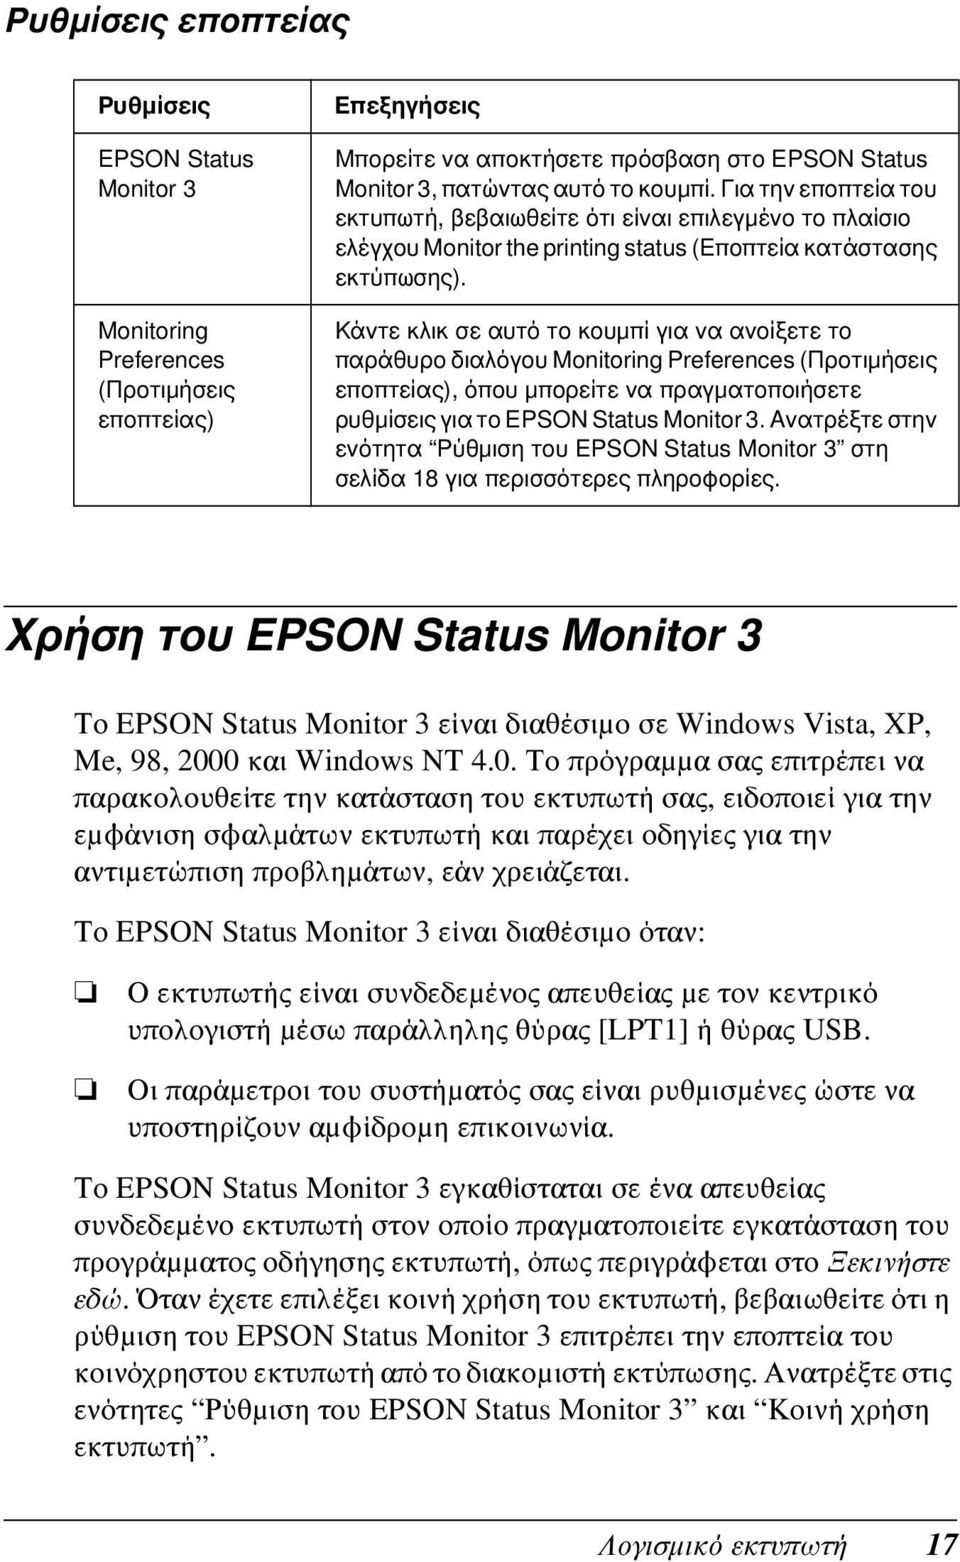 Κάντε κλικ σε αυτό το κουμπί για να ανοίξετε το παράθυρο διαλόγου Monitoring Preferences (Προτιμήσεις εποπτείας), όπου μπορείτε να πραγματοποιήσετε ρυθμίσεις για το EPSON Status Monitor 3.